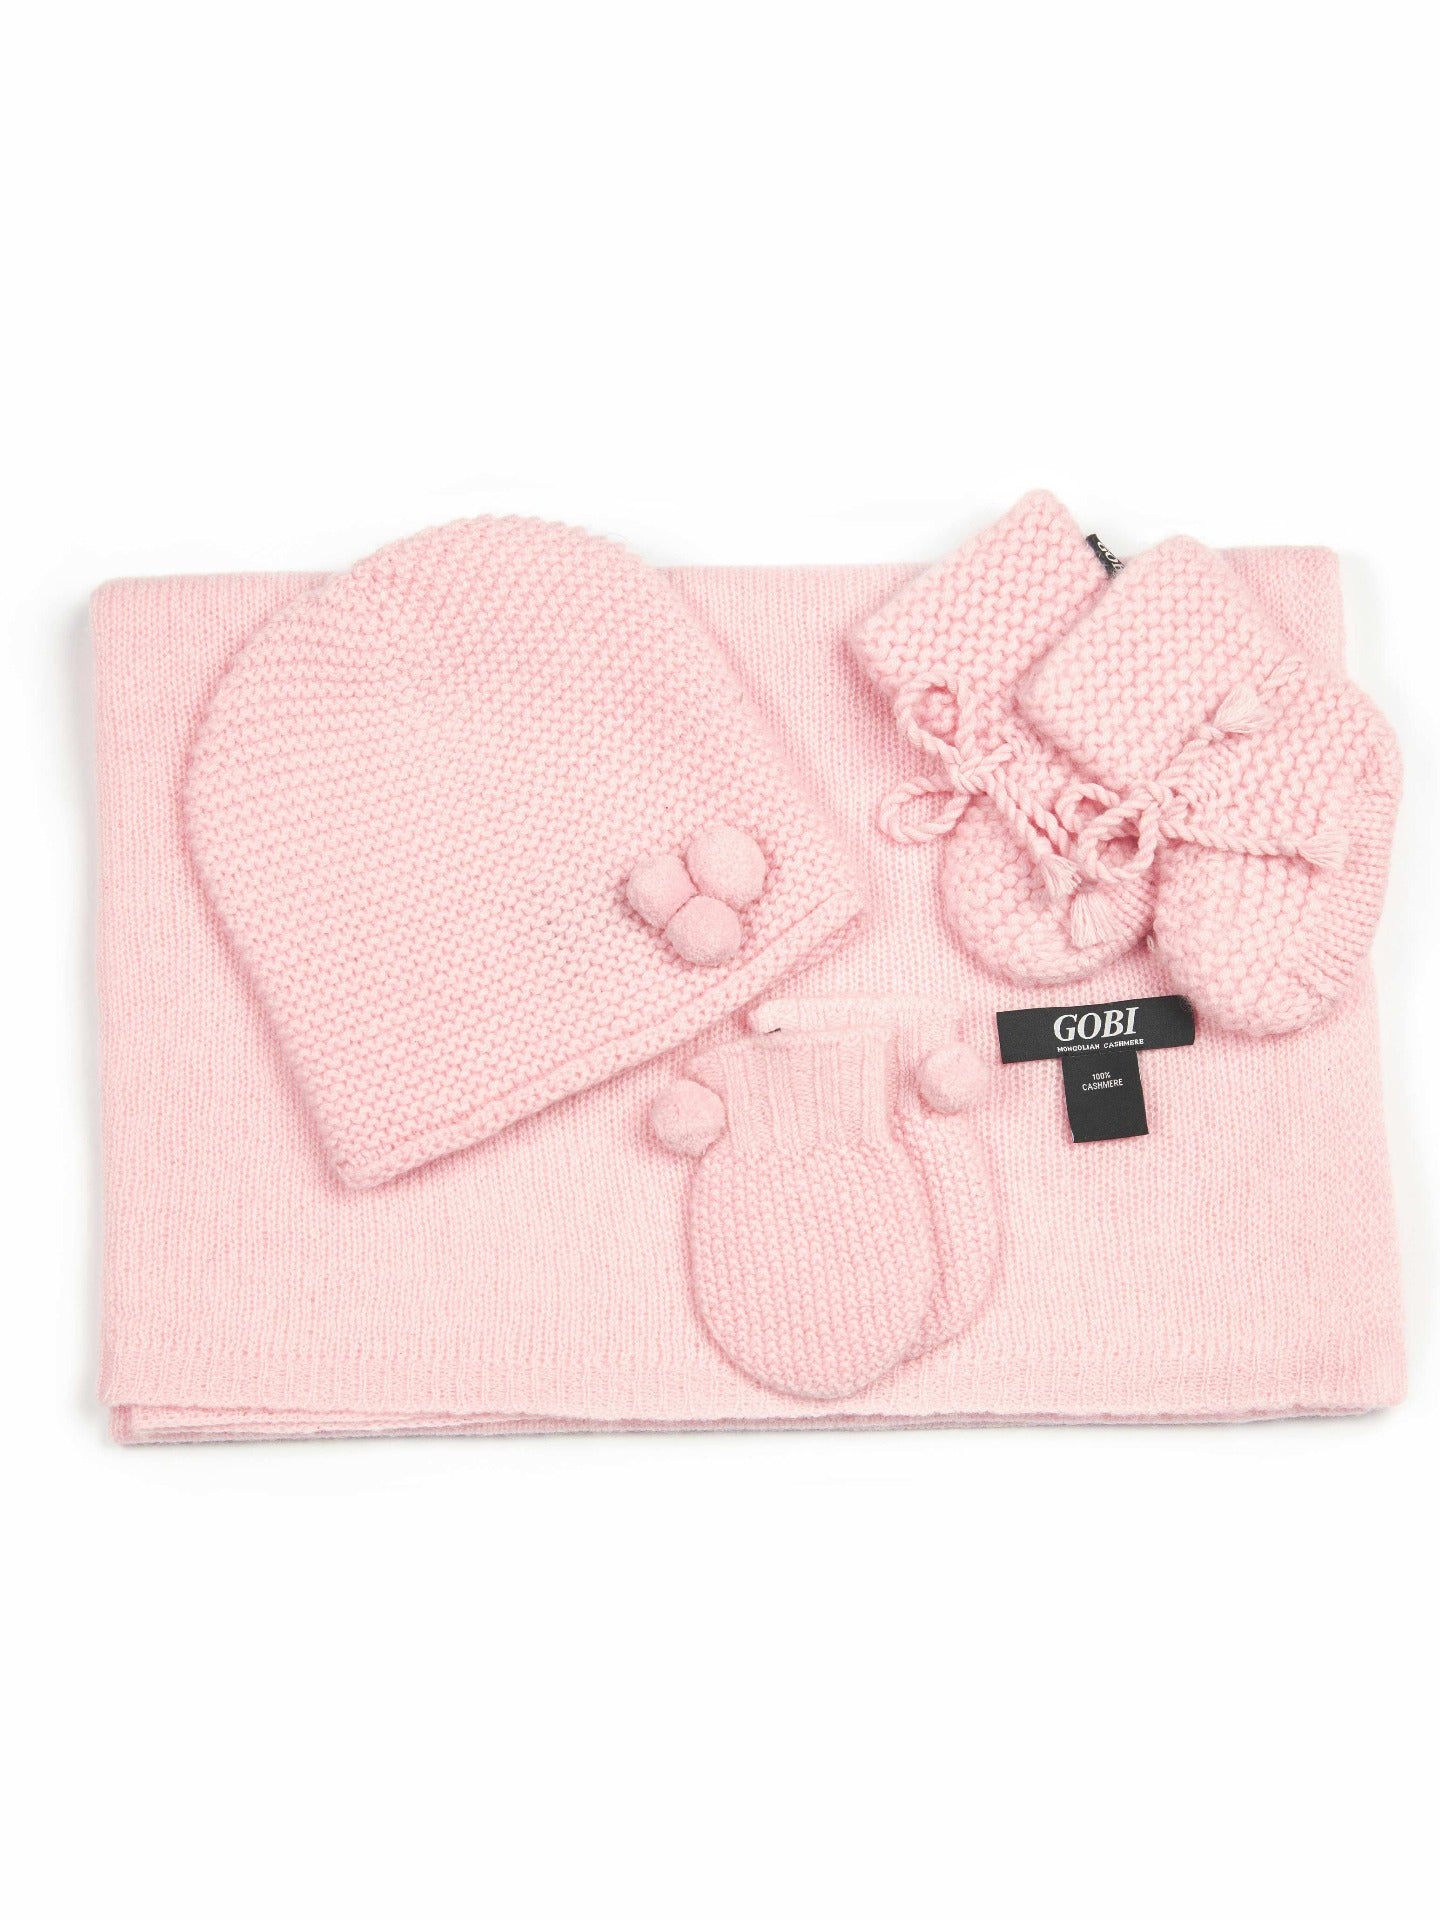 Unisex Cashmere Baby Set Almond Blossom - Gobi Cashmere